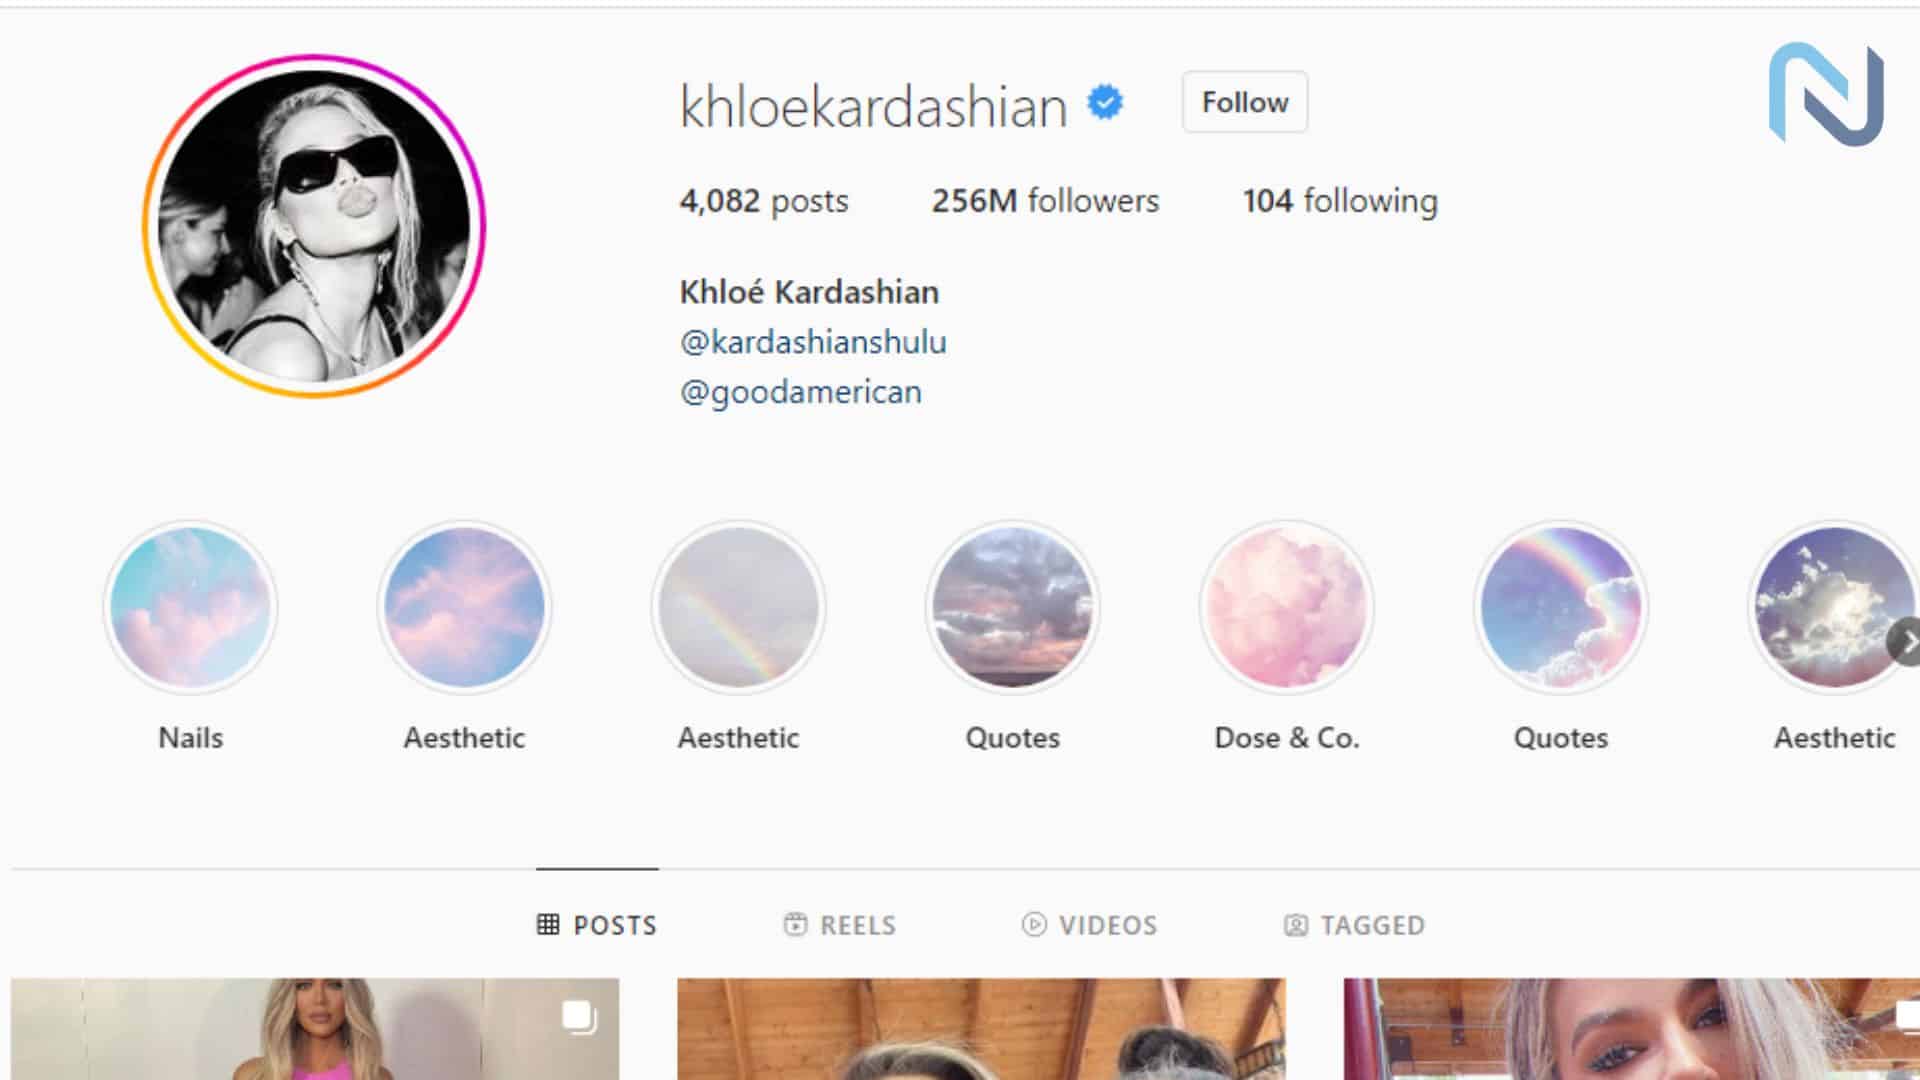 Khloe Kardashian Most Followed Instagram Account